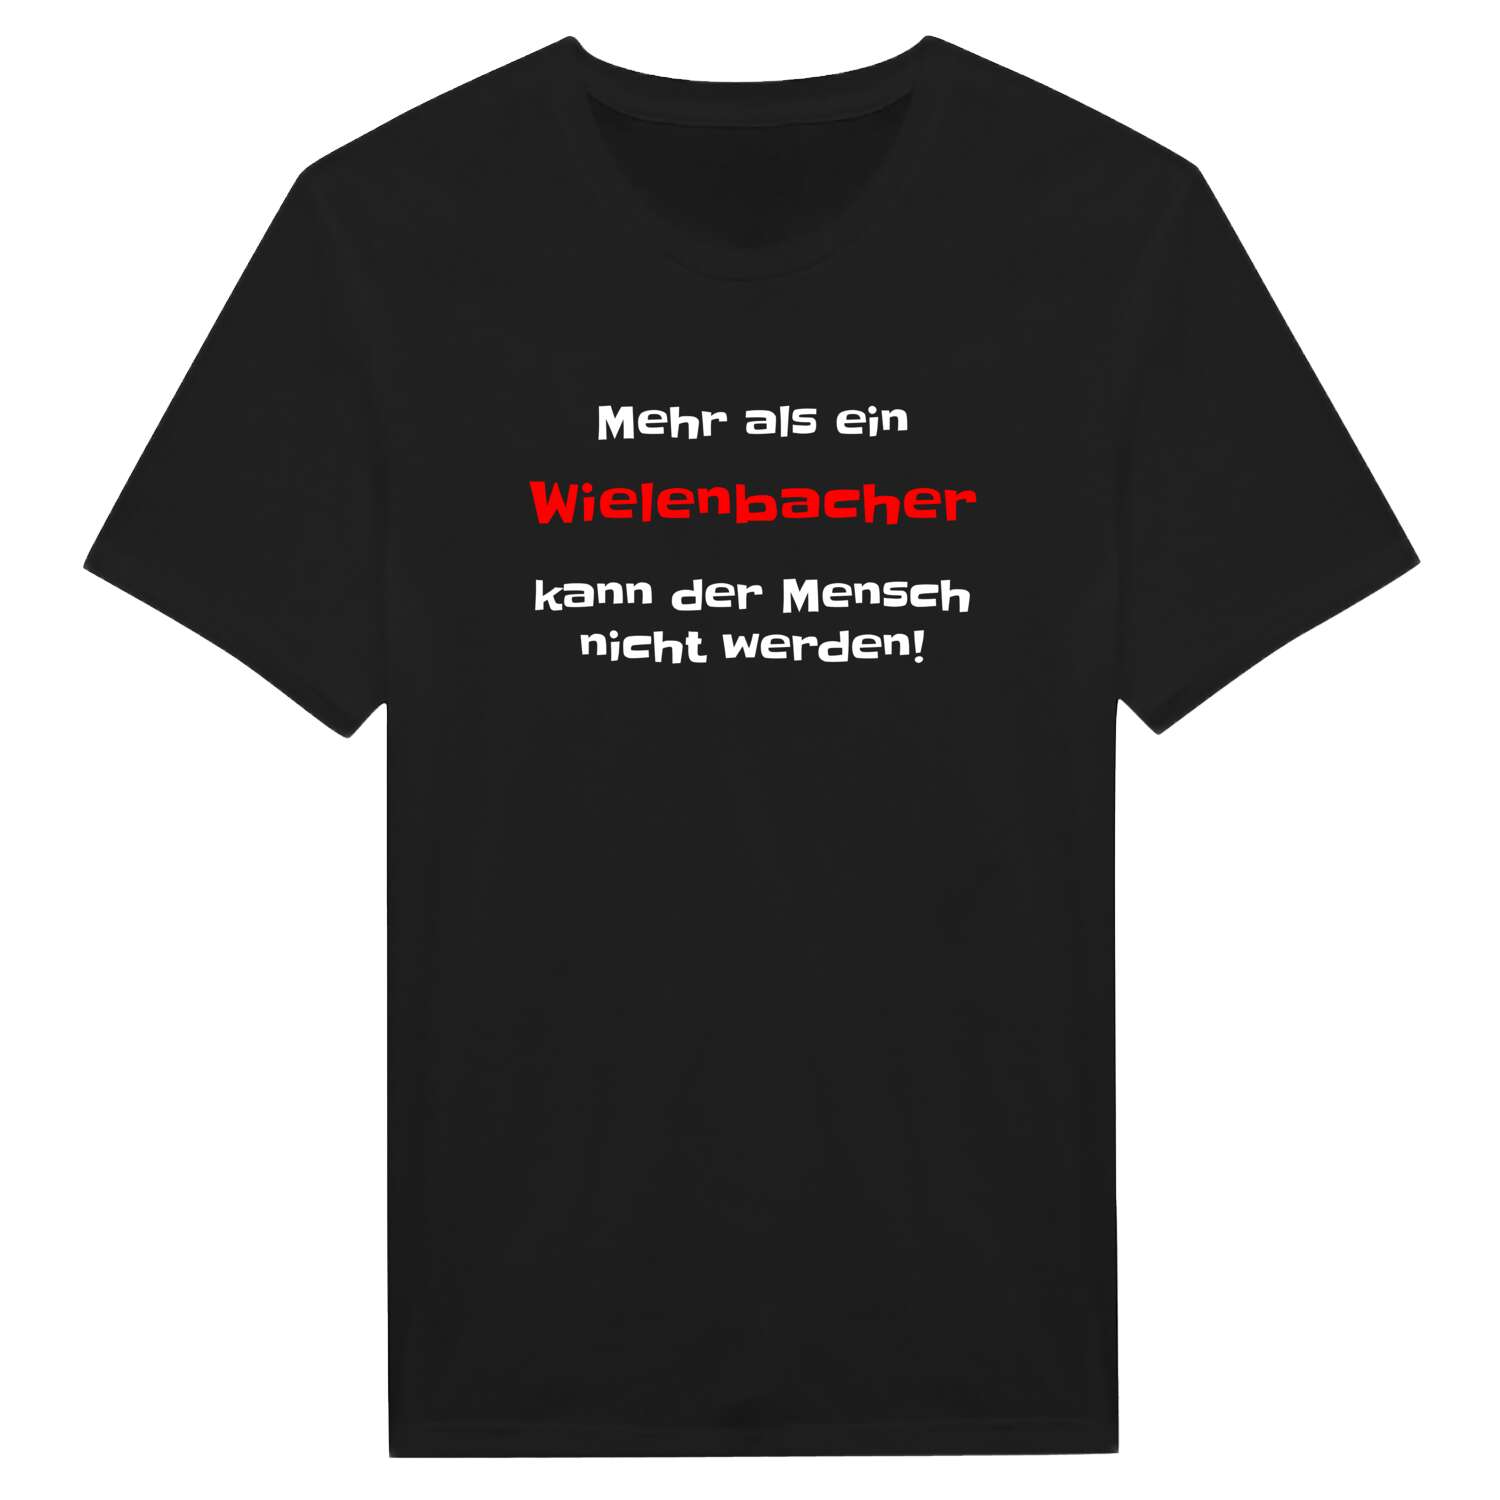 Wielenbach T-Shirt »Mehr als ein«